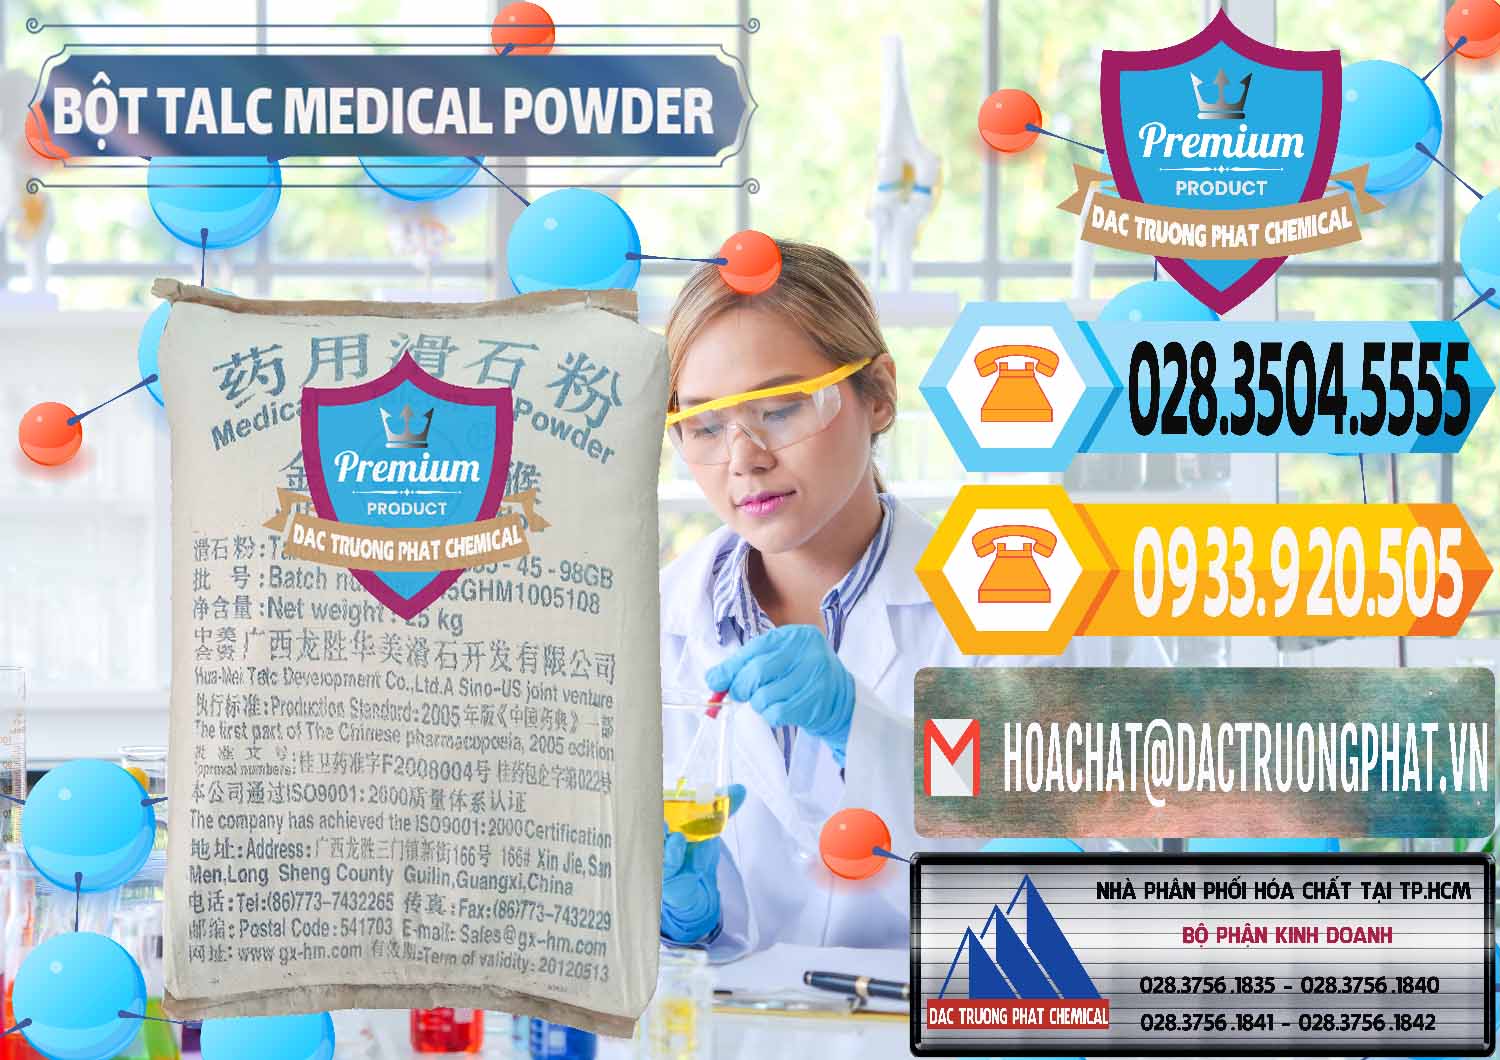 Nơi kinh doanh & bán Bột Talc Medical Powder Trung Quốc China - 0036 - Đơn vị phân phối _ cung cấp hóa chất tại TP.HCM - hoachattayrua.net